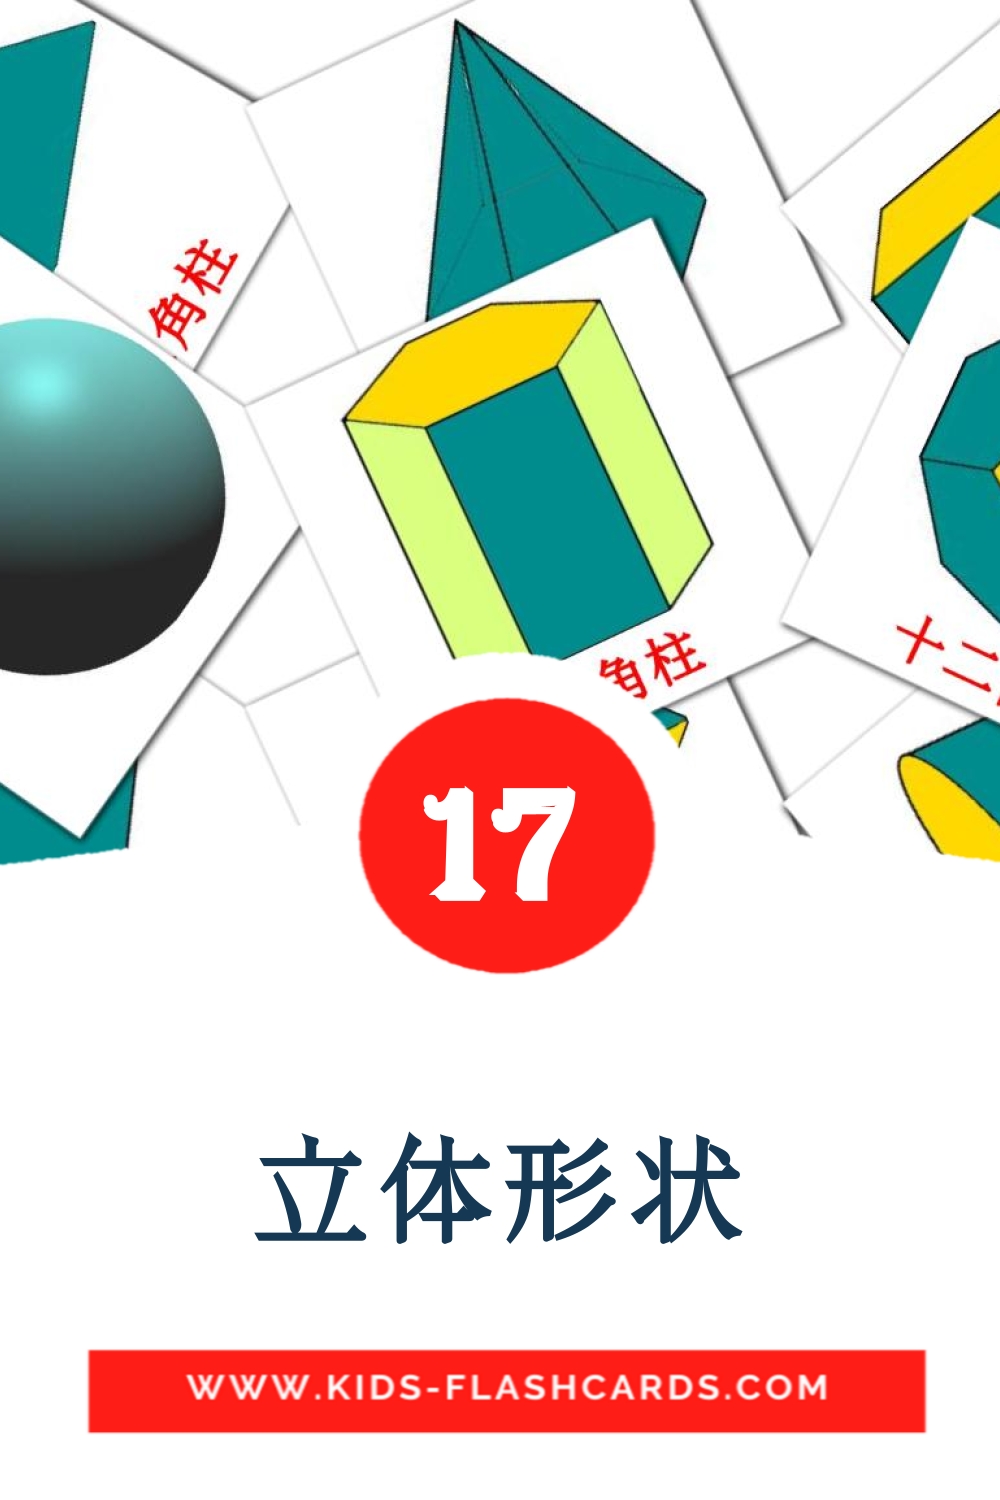 17 carte illustrate di 立体形状 per la scuola materna in cinese(tradizionale)